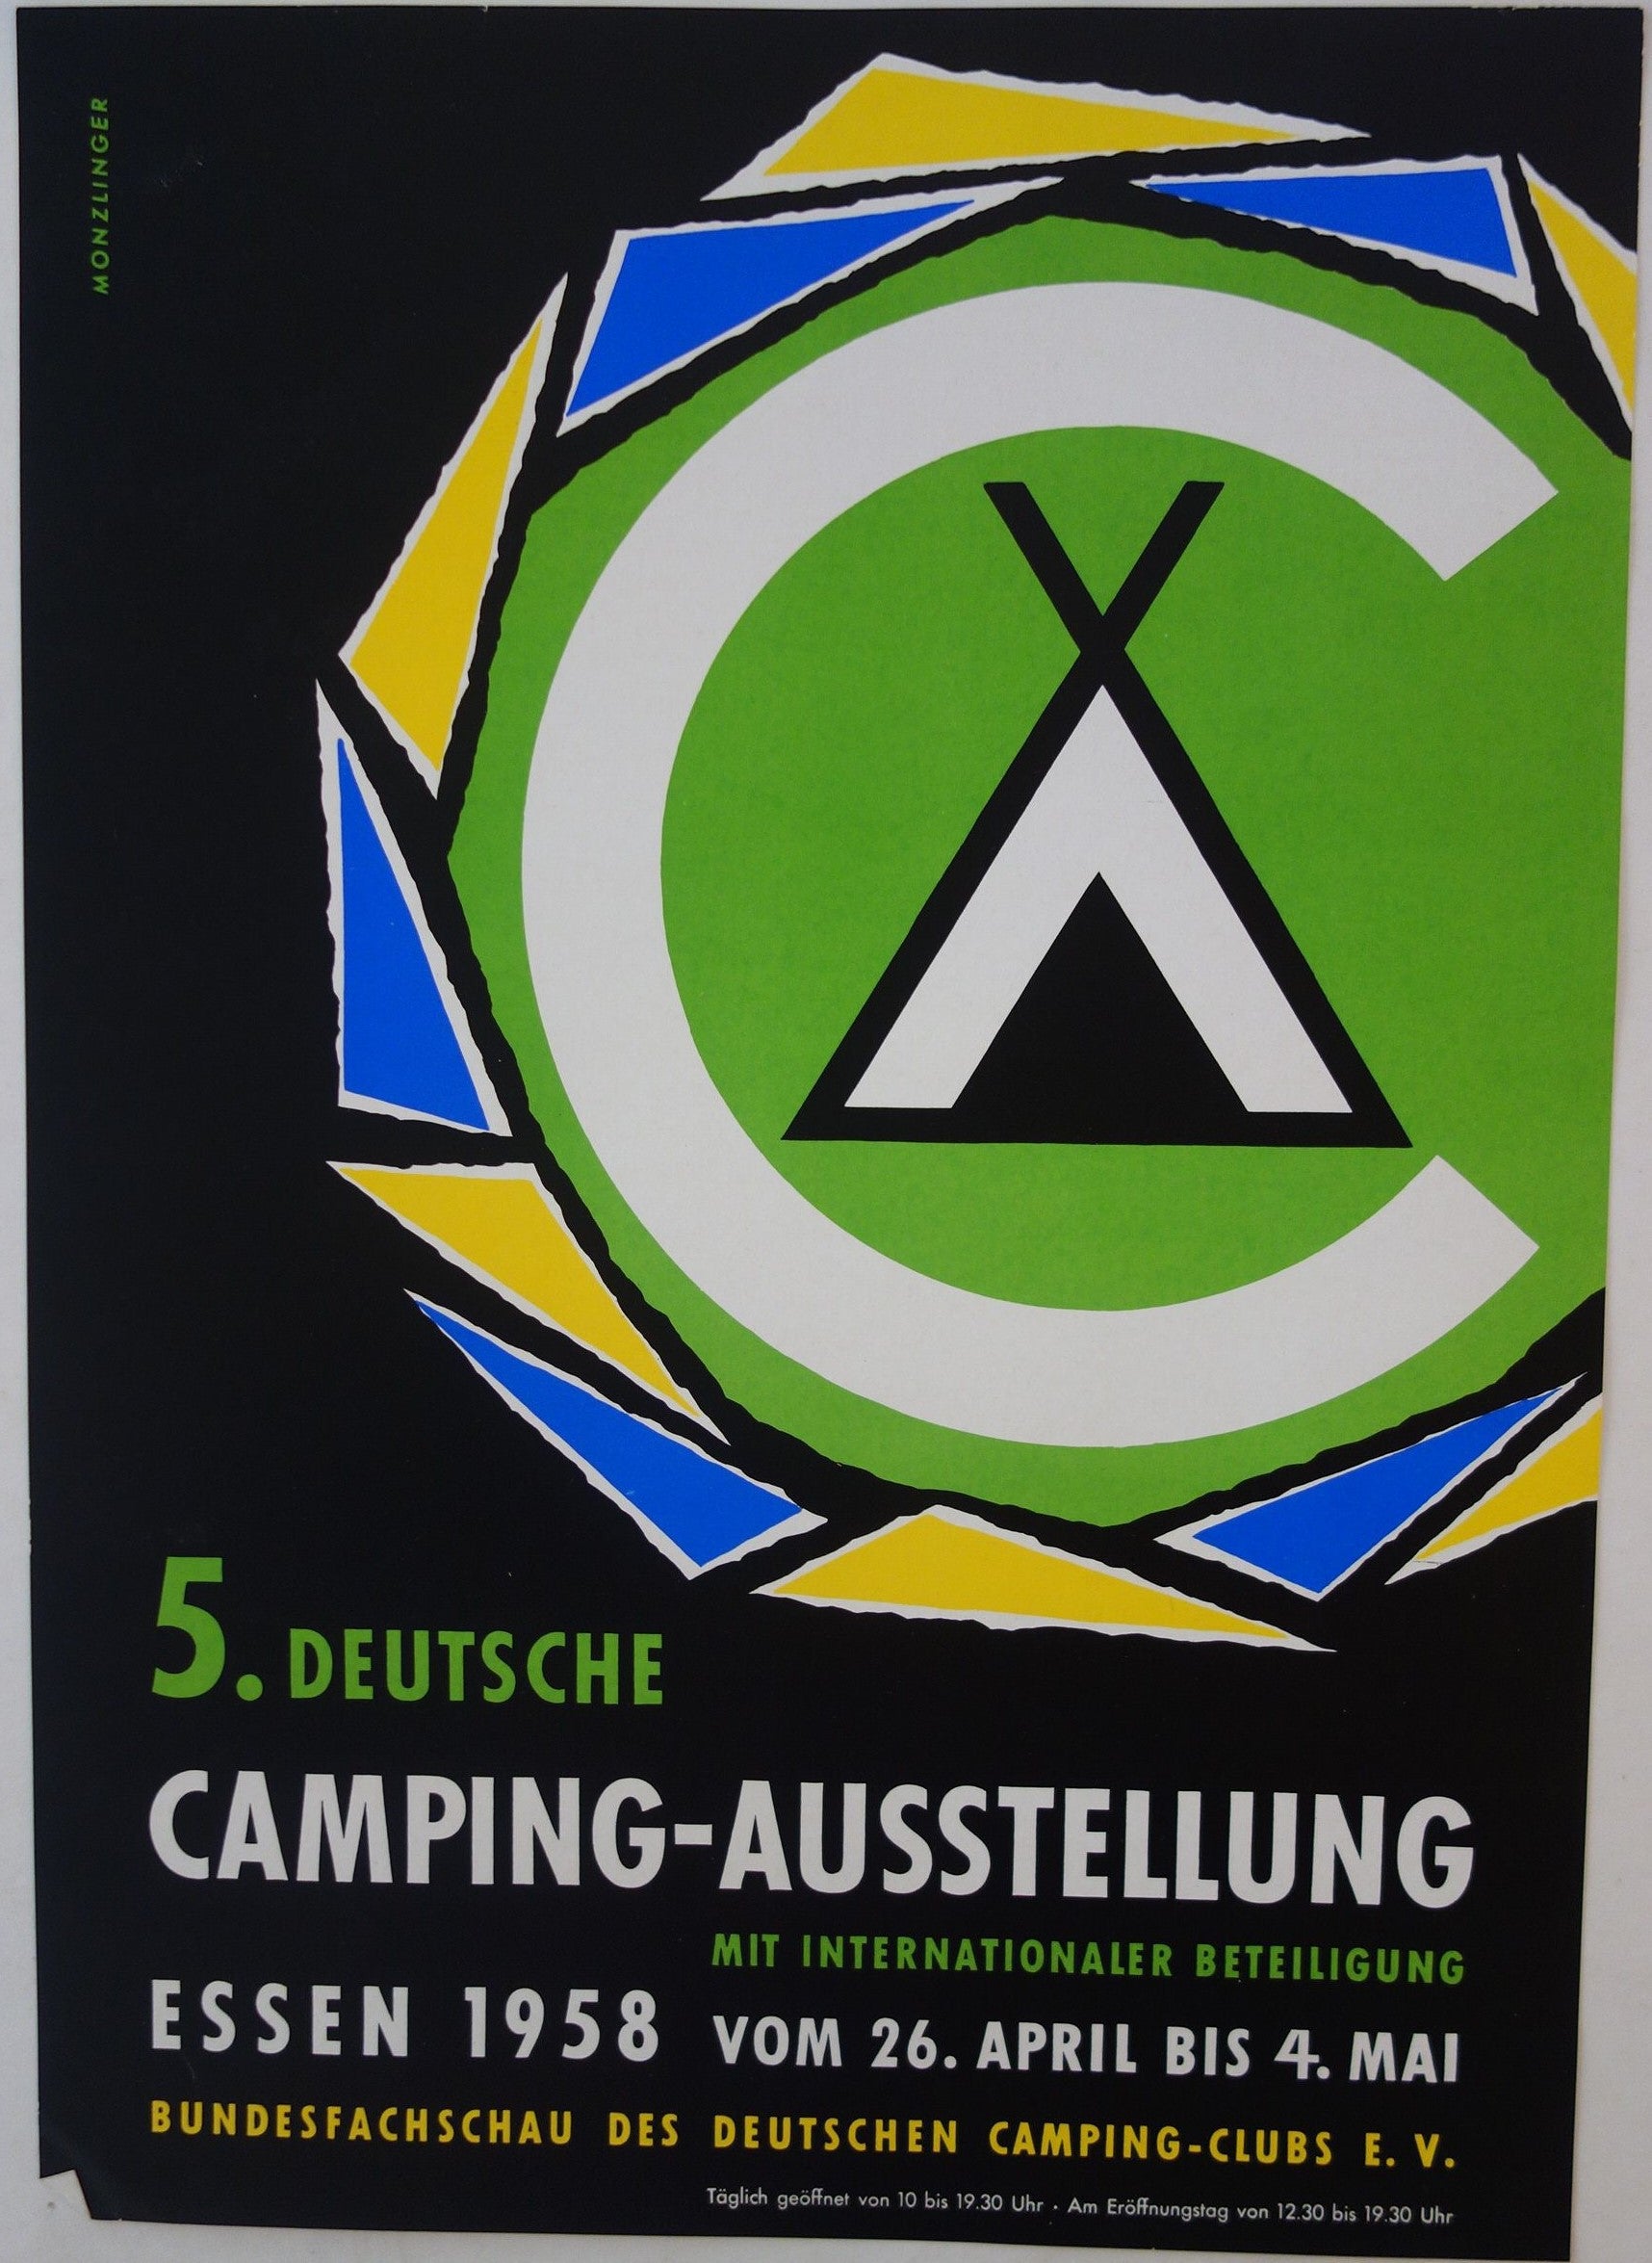 Camping-Ausstellung